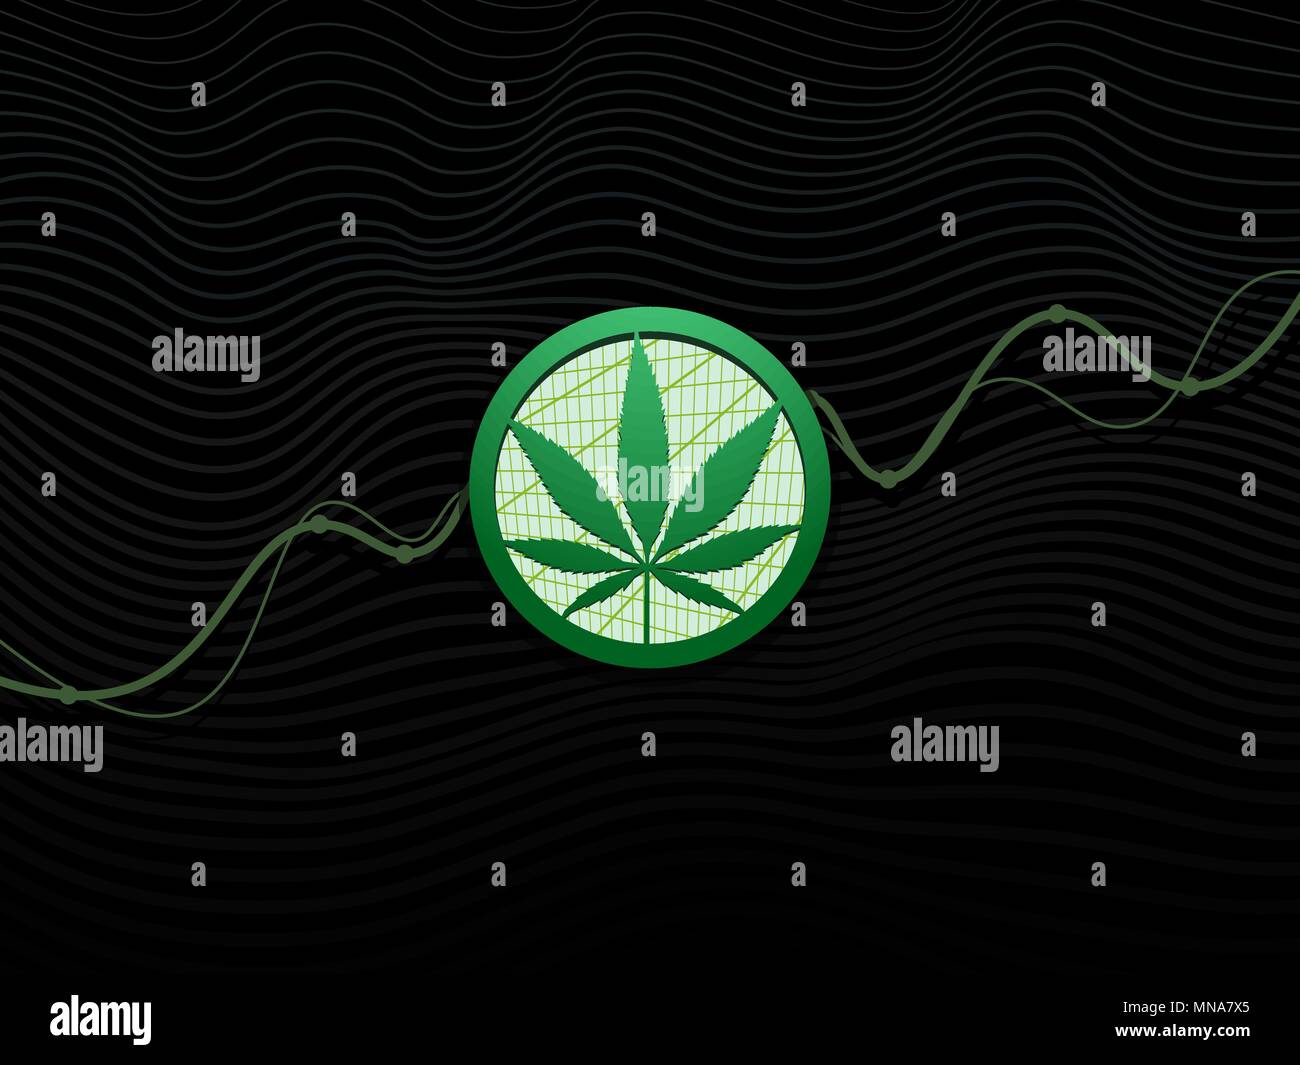 Cannabis leaf in cerchio con rising graph.Sfondo nero Illustrazione Vettoriale